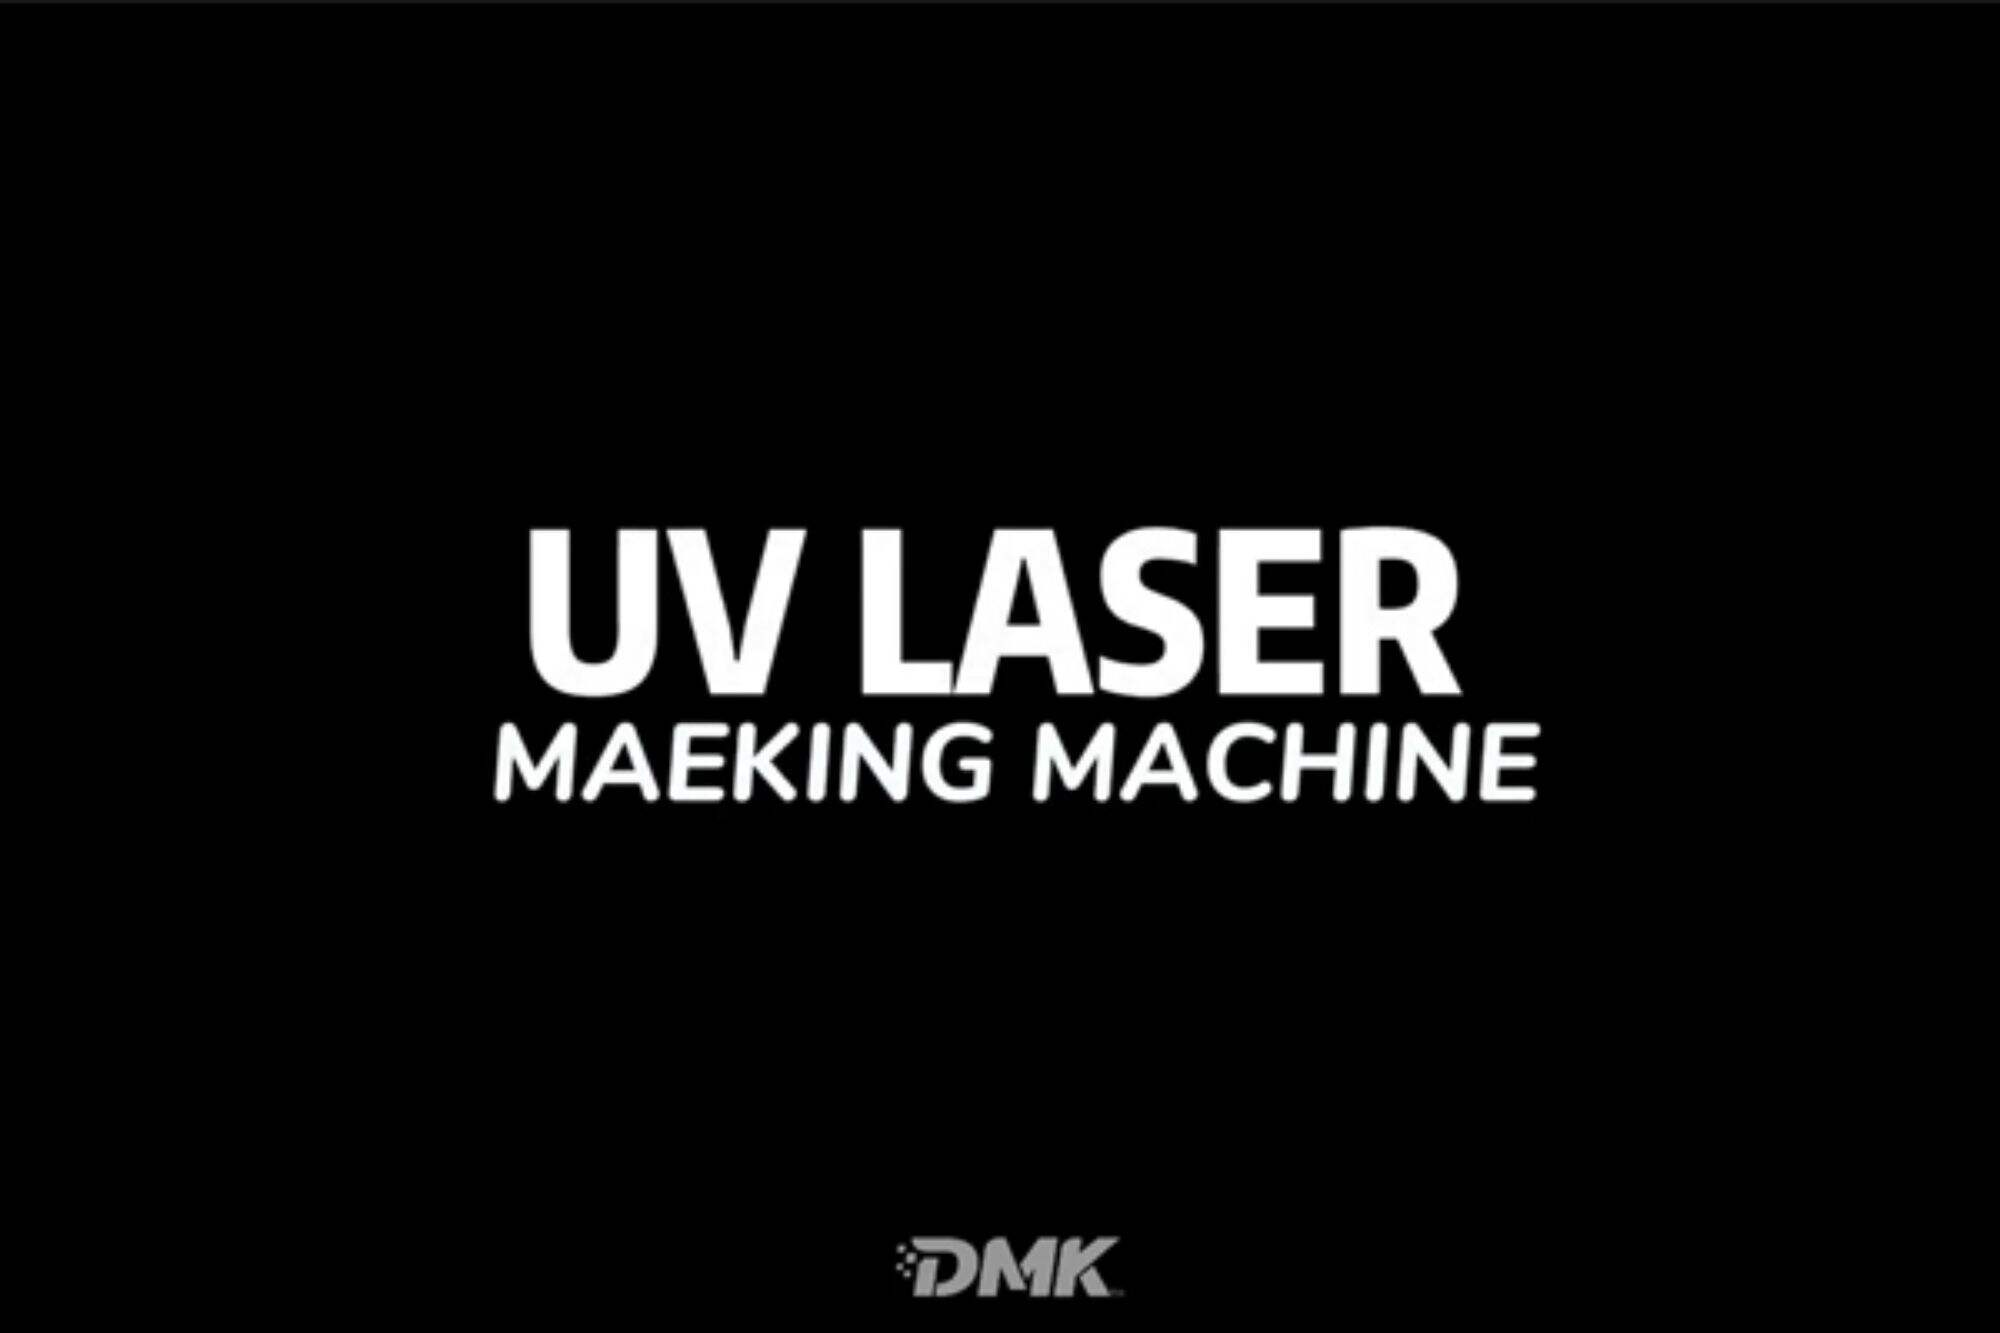 DMK UV laser marking machine